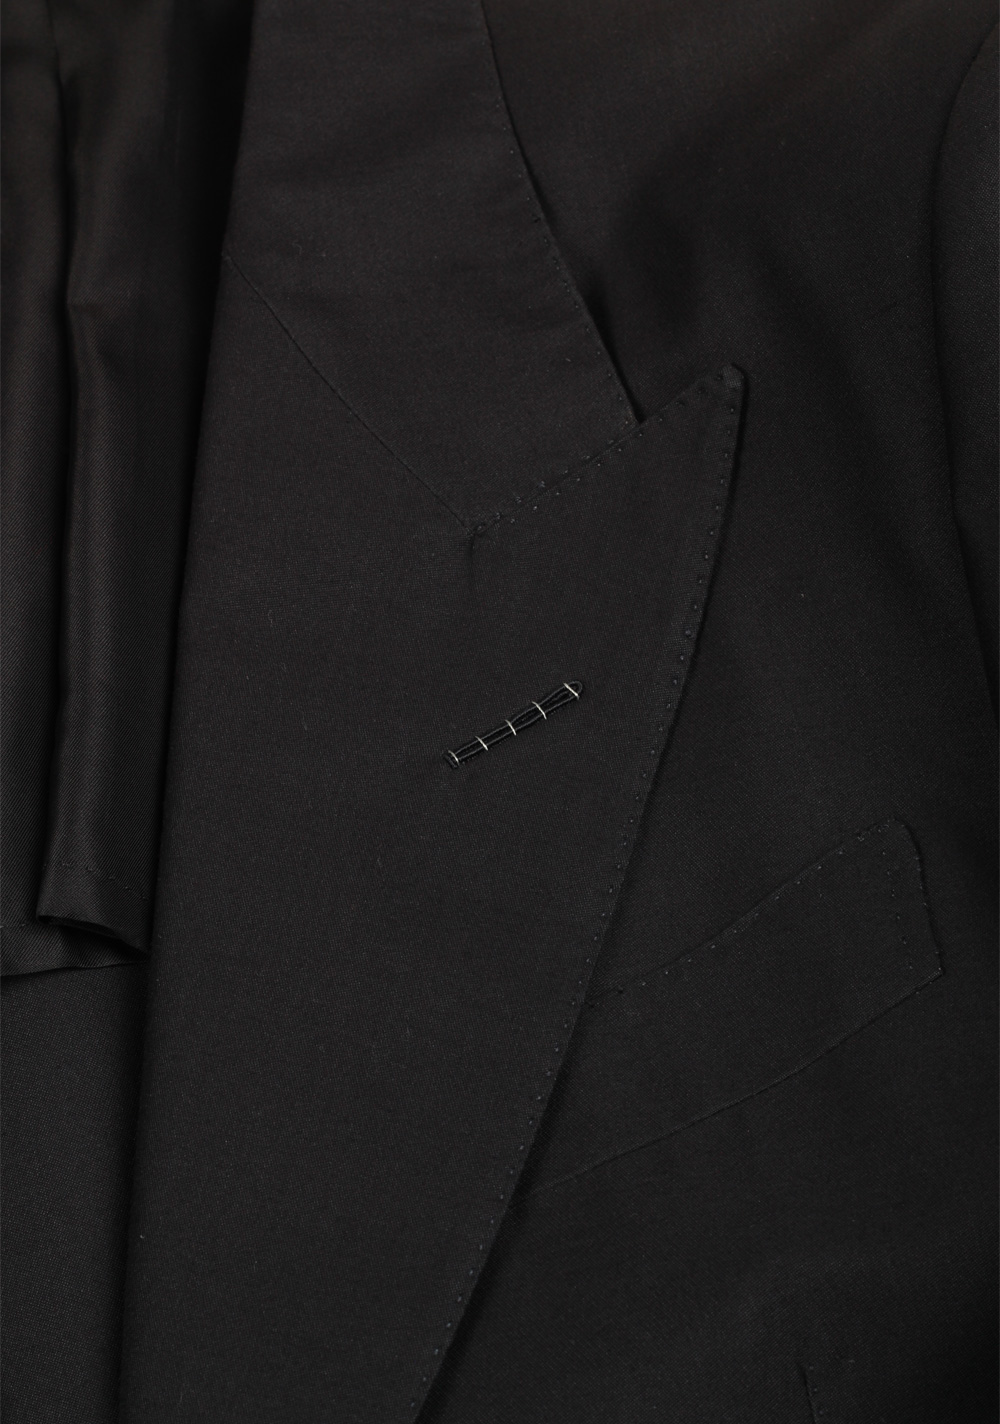 TOM FORD Atticus Black Suit Size 46 / 36R U.S. | Costume Limité